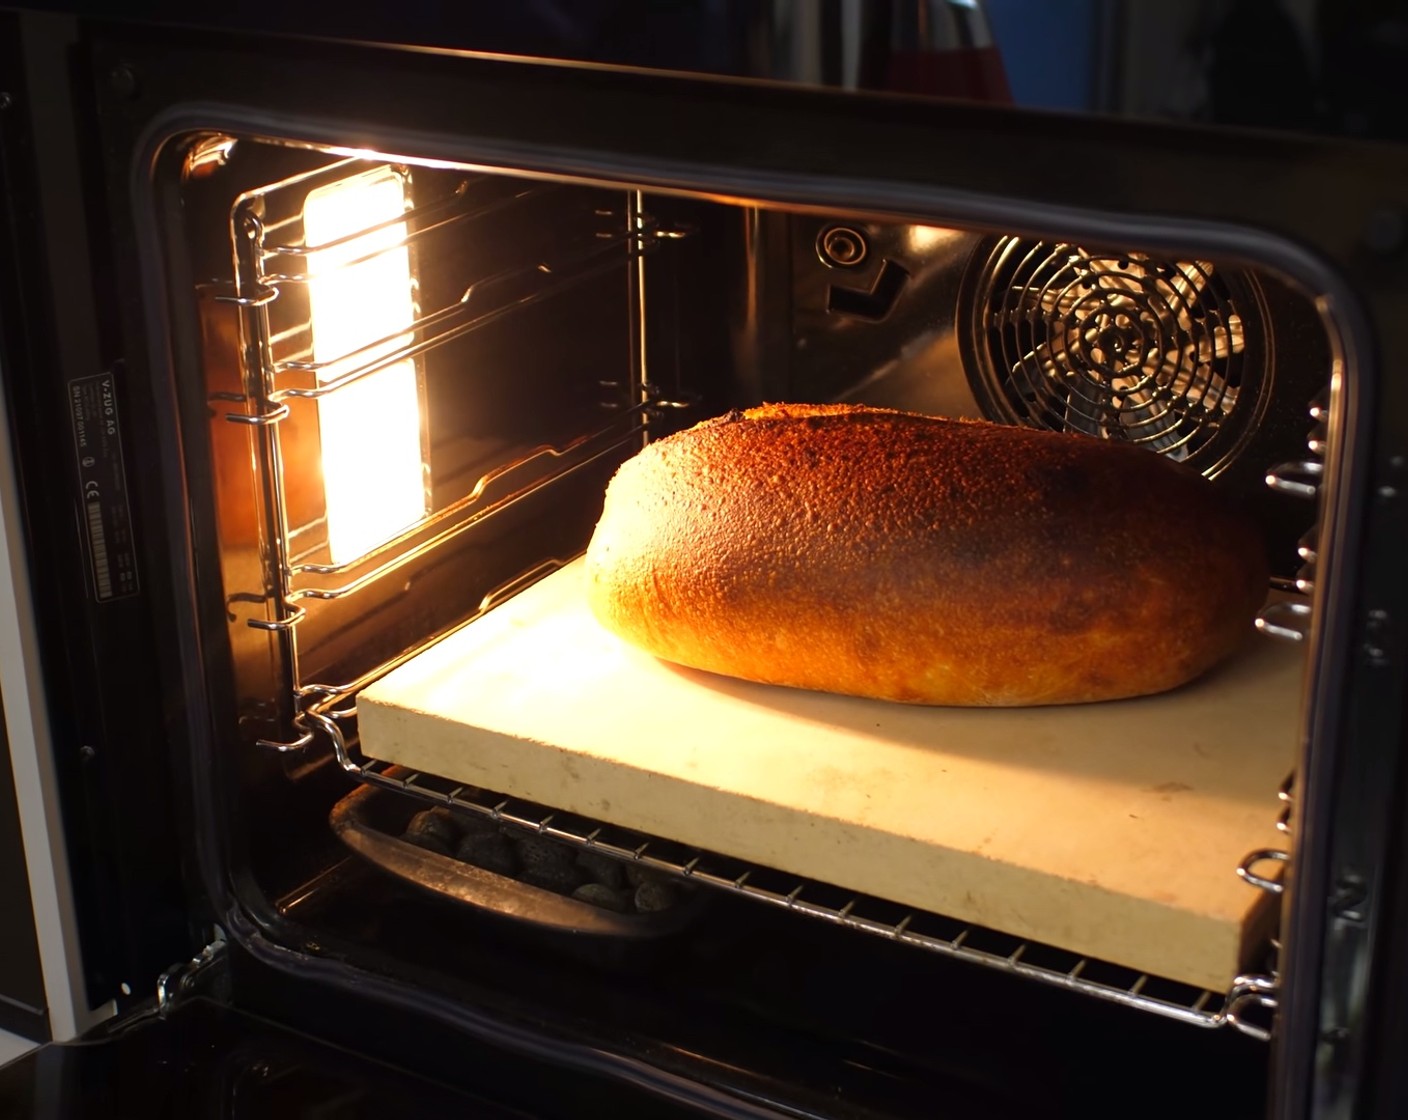 Schritt 11 Nach Ablauf der Zeit, die Schüssel mit dem Wasser aus dem Ofen nehmen, den Dampf ablassen und die Ofentemperatur auf 190° Ober-/Unterhitze reduzieren. Das Brot für weitere 30-35 Minuten knusprig ausbacken.